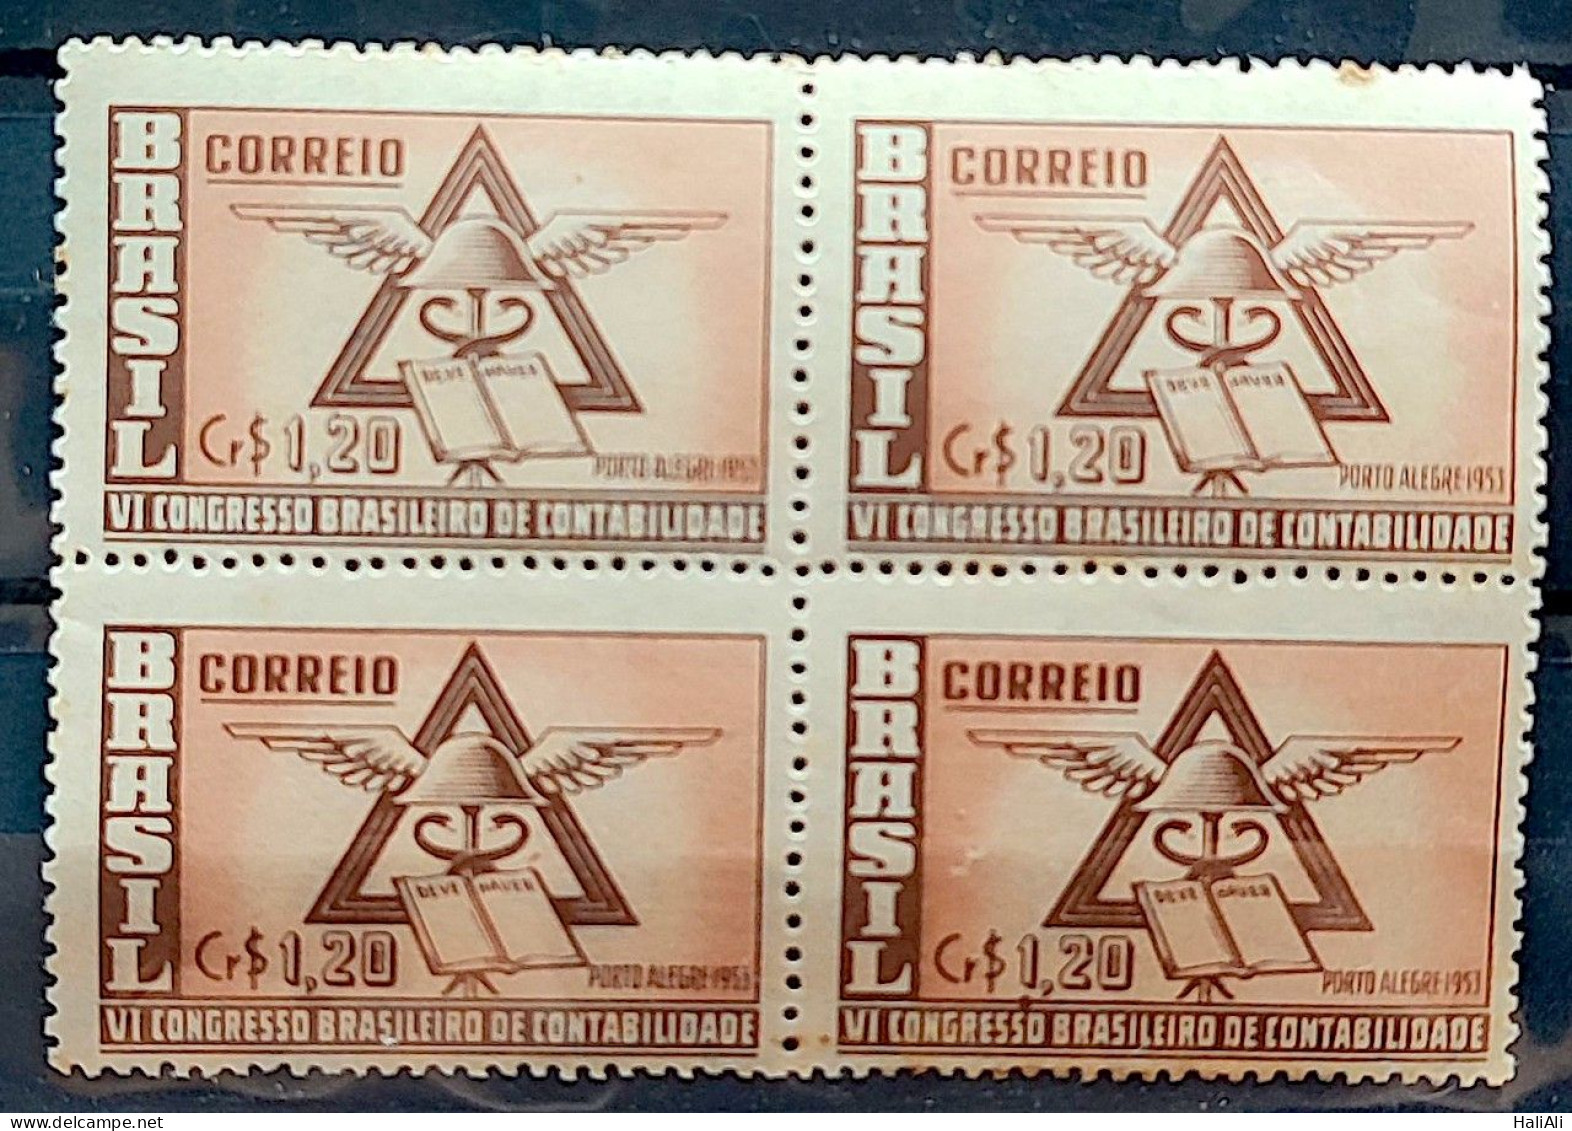 C 296 Brazil Stamp Accounting Congress Porto Alegre Economy 1953 Block Of 4 2 - Ongebruikt